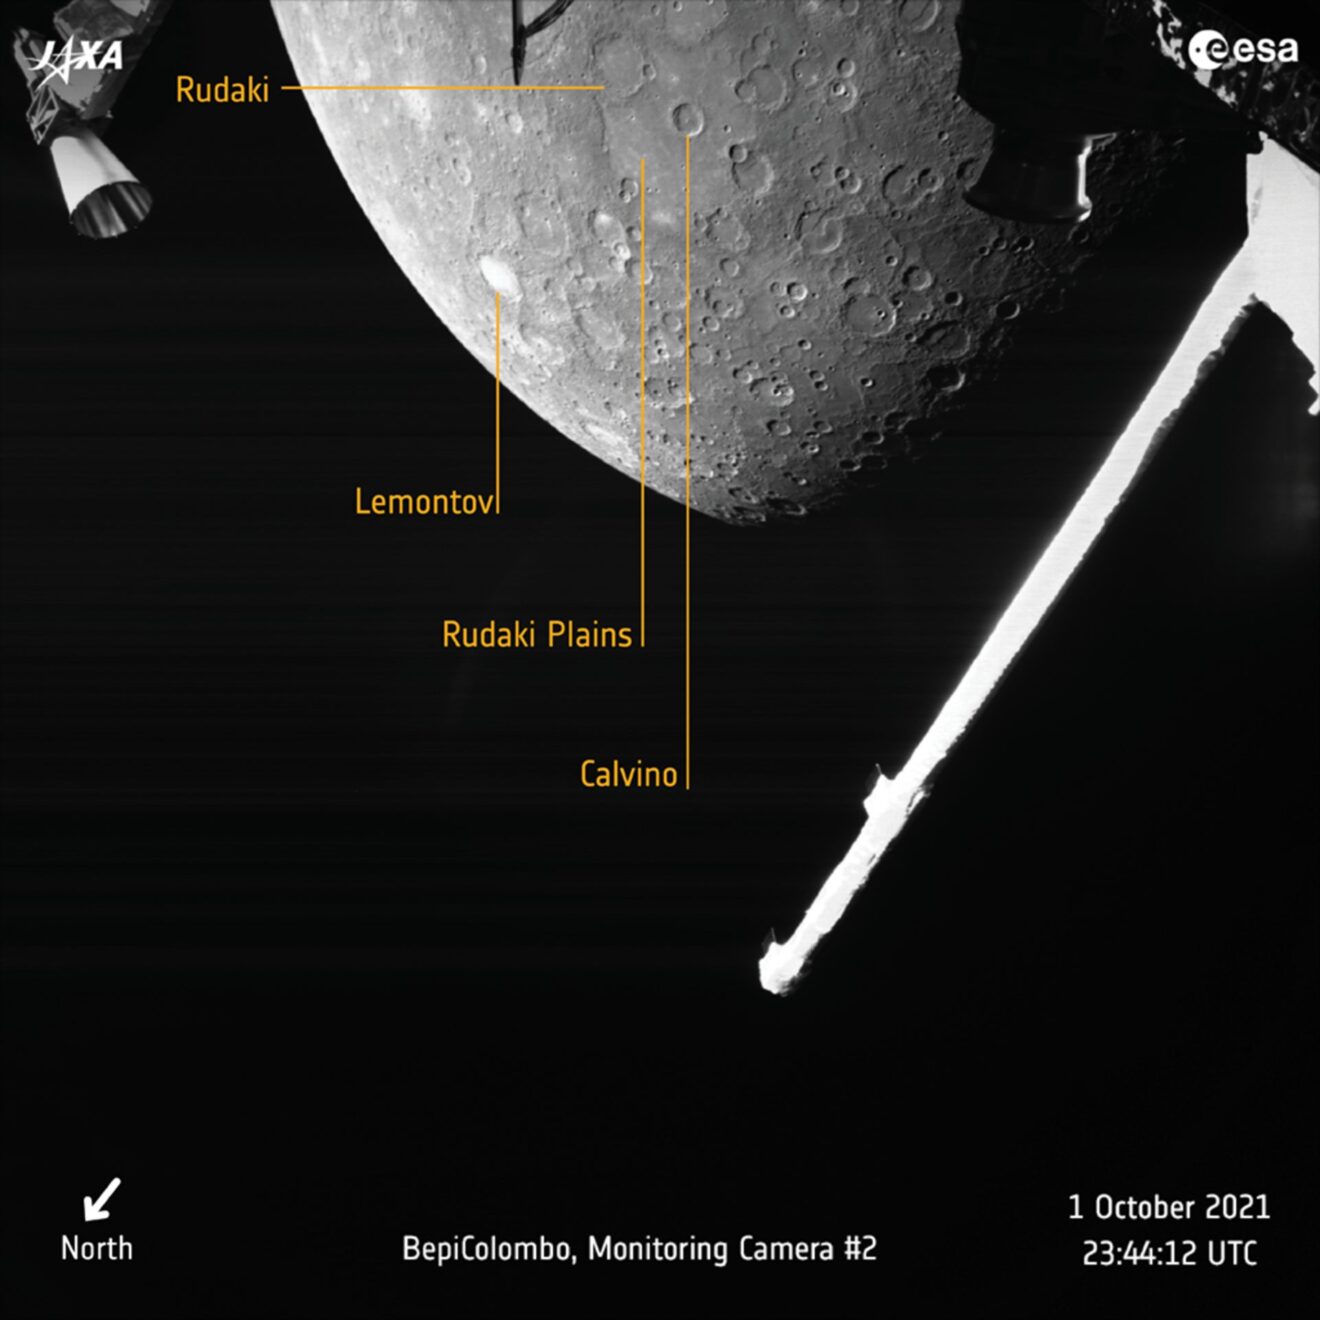 Eerste scheervlucht van BepiColombo langs Mercurius geslaagd